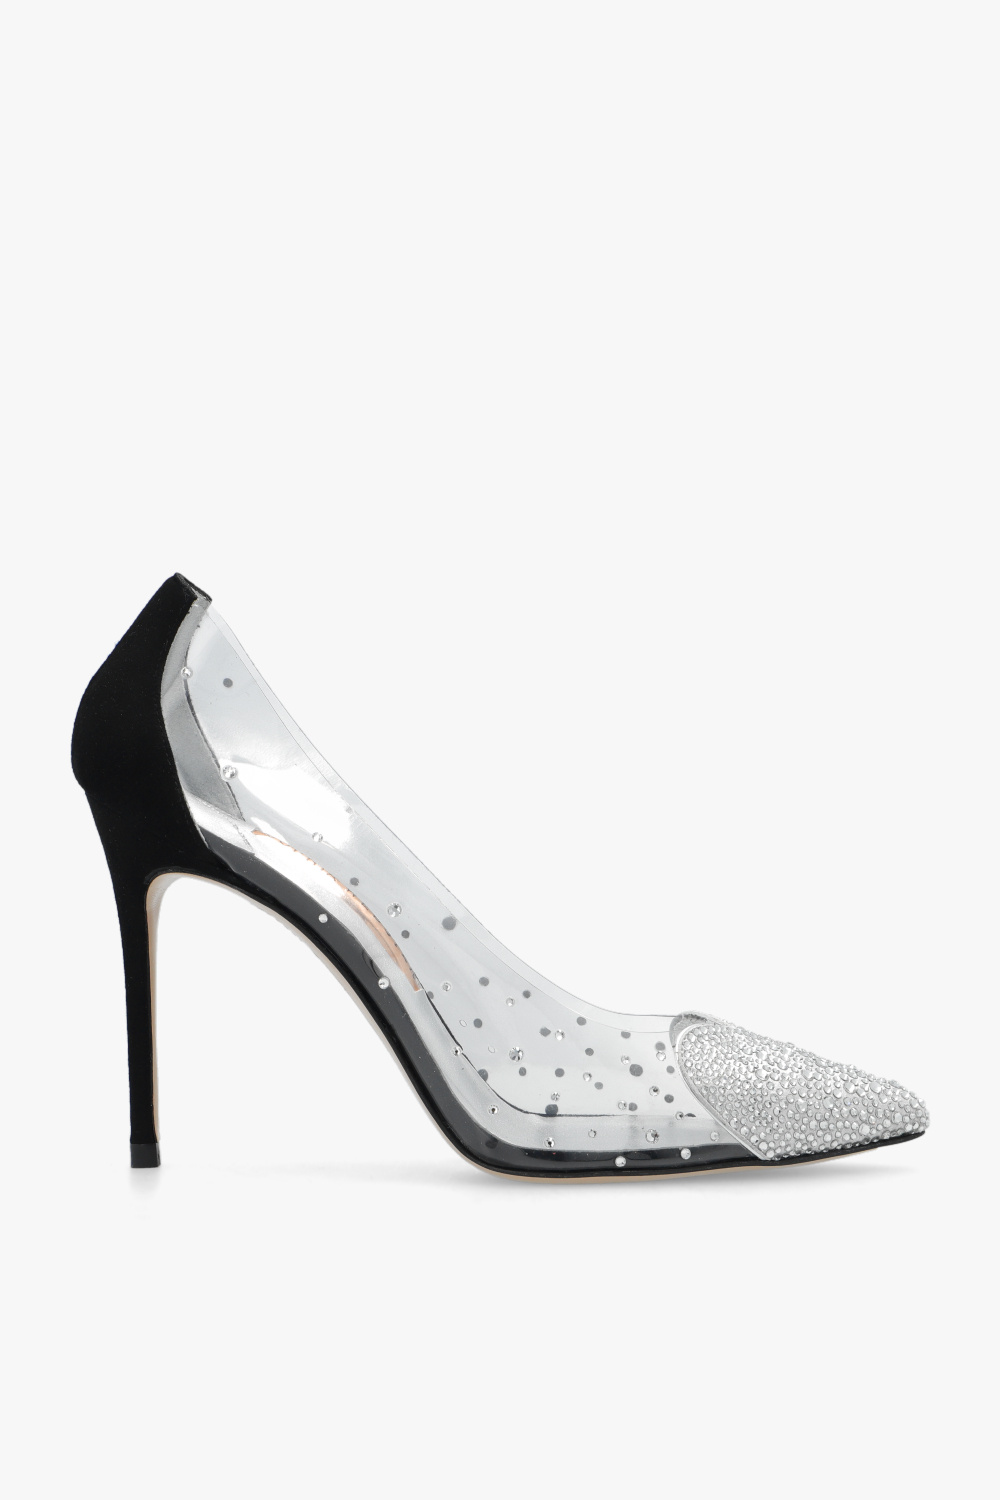 Sophia Webster 'Amora' stiletto pumps | Women's wmns Shoes | wmns 